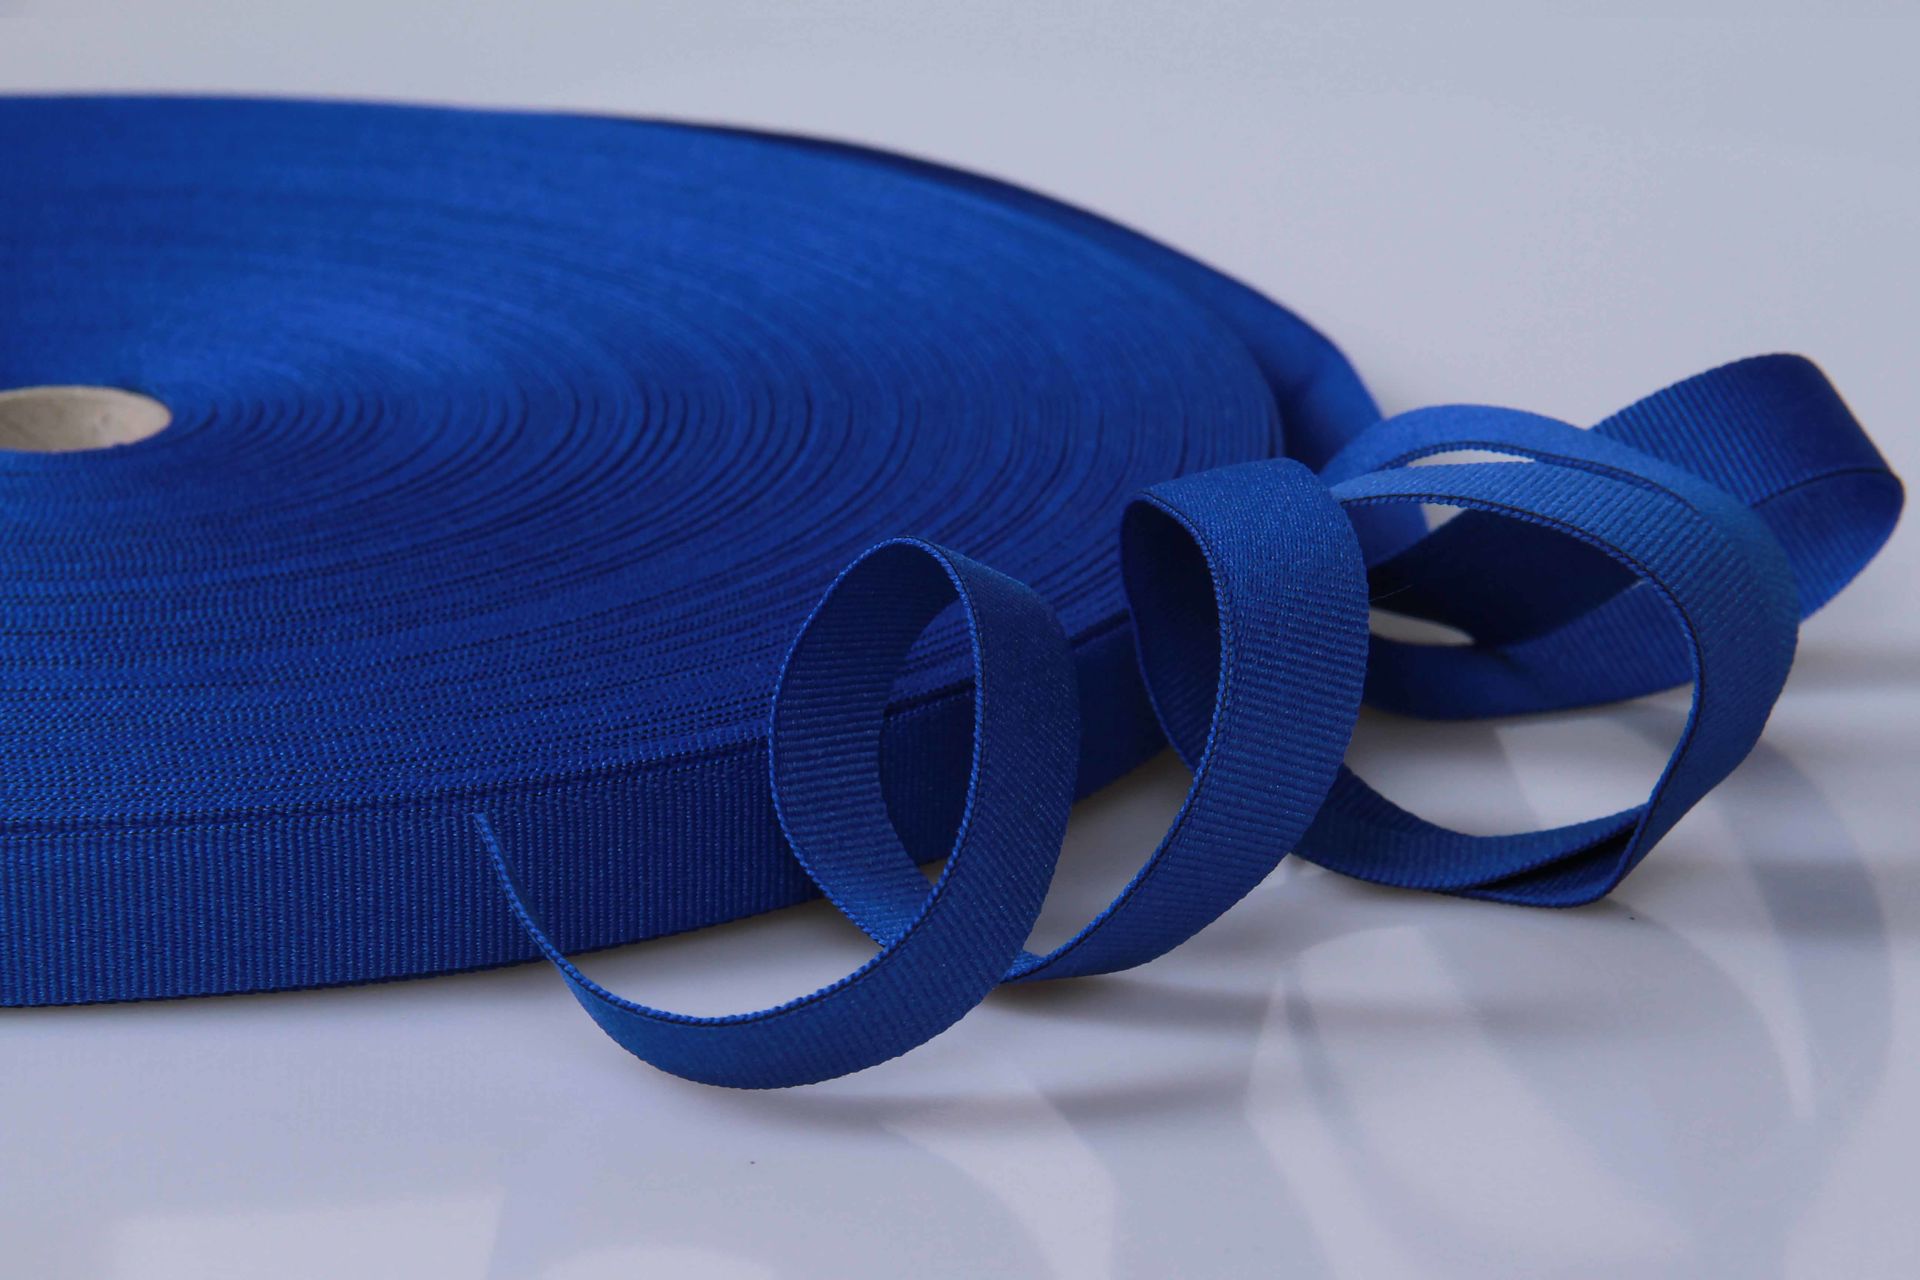 PES-Ripsband  -  15 mm breit  -  50 mtr. Rolle  -  königsblau  -  soft/weich